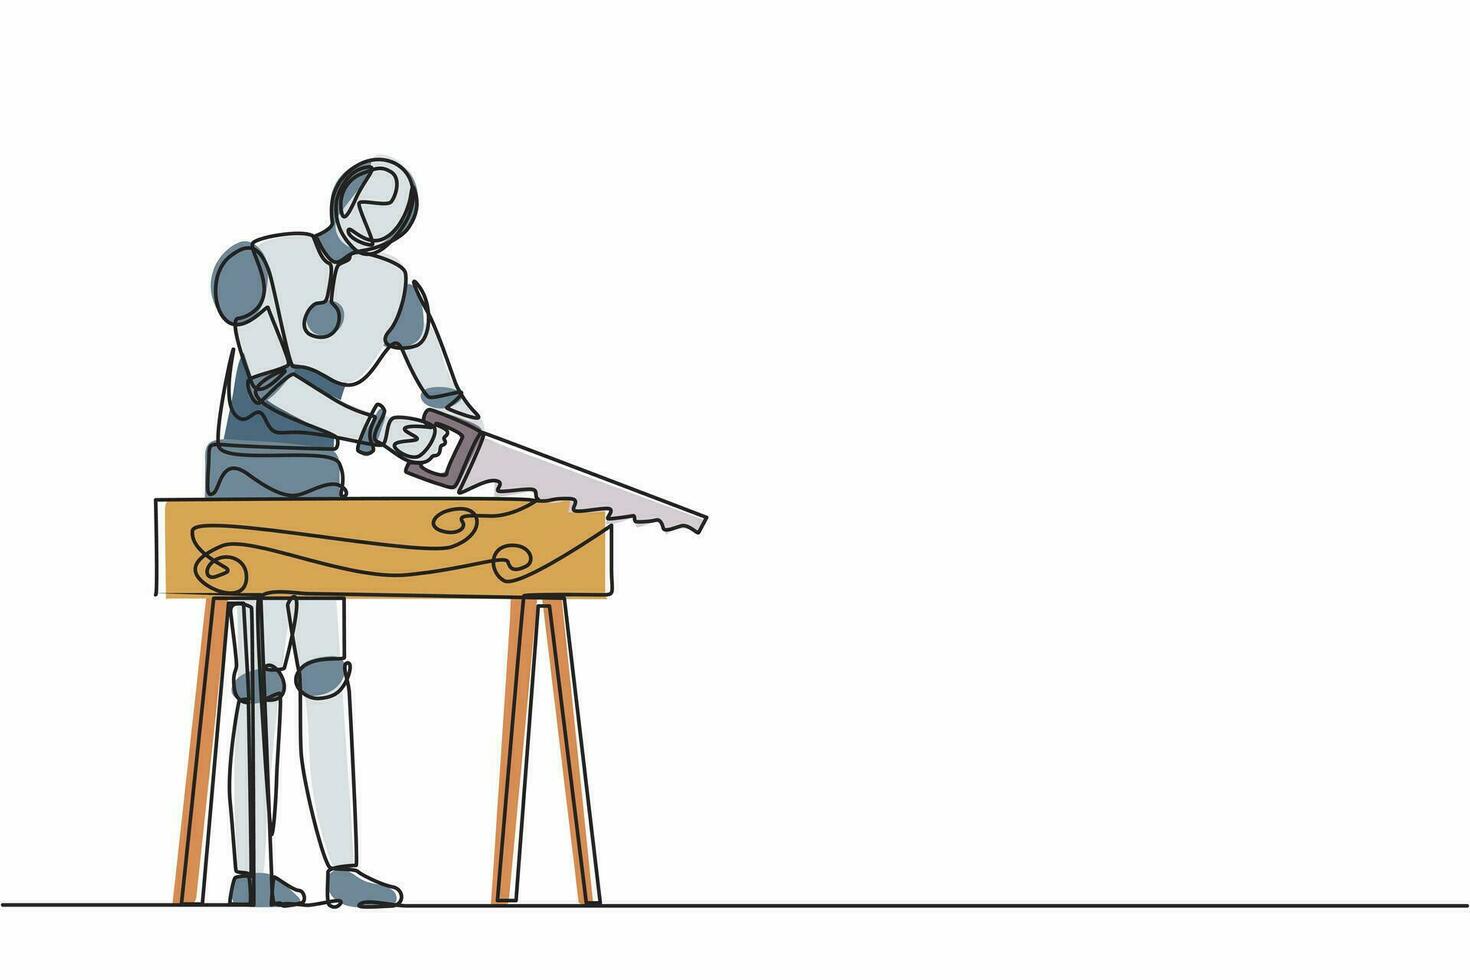 einzelne einzeilige zeichnung von robotermechanikern, bauern oder tischlern, die bretter sägen. zukünftige Technologieentwicklung. maschinelles lernen mit künstlicher intelligenz. ununterbrochene Linie zeichnen Design-Vektor-Illustration vektor